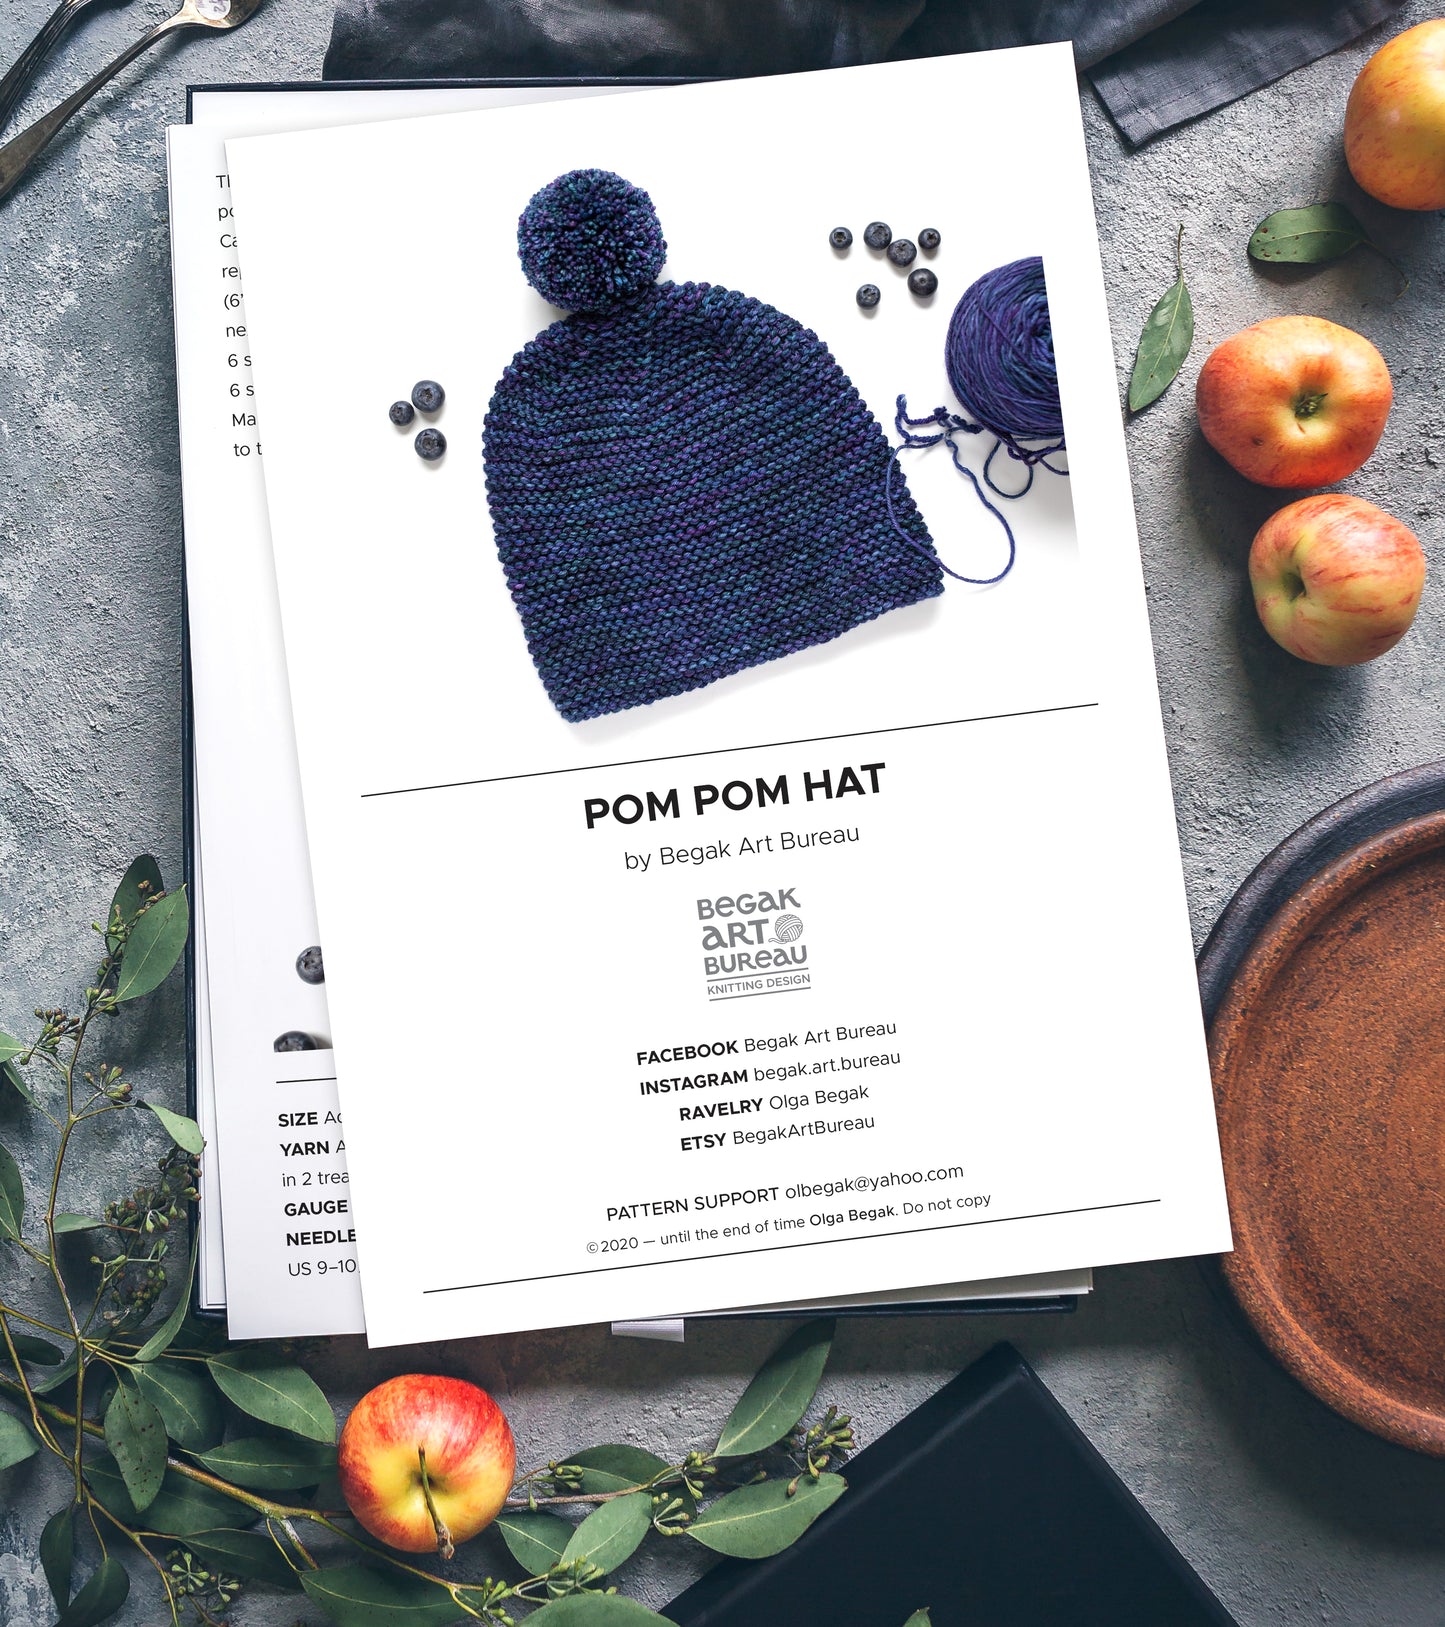 Pom pom garter stitch hat knitting pattern